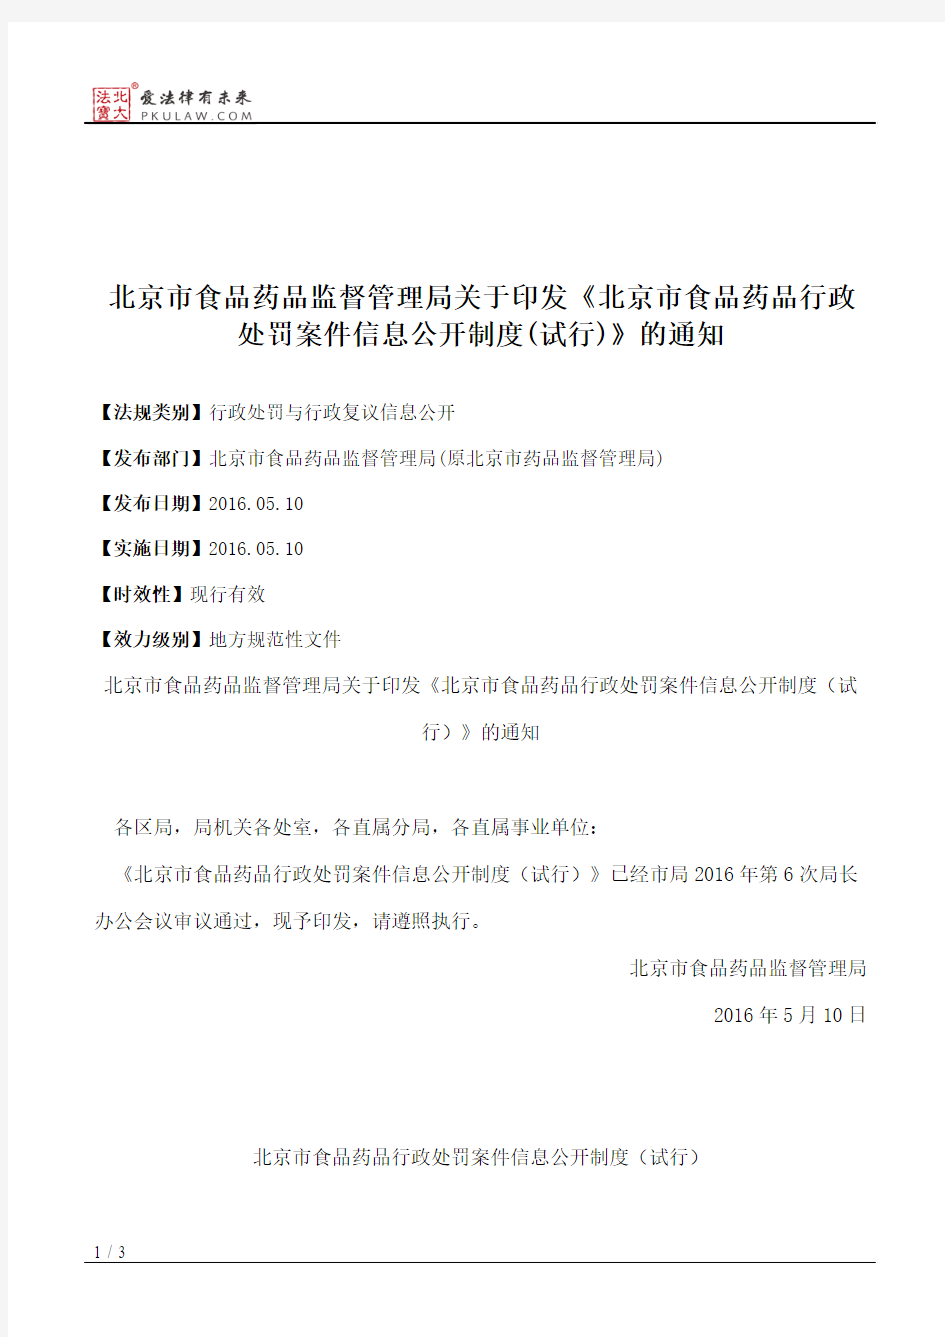 北京市食品药品监督管理局关于印发《北京市食品药品行政处罚案件